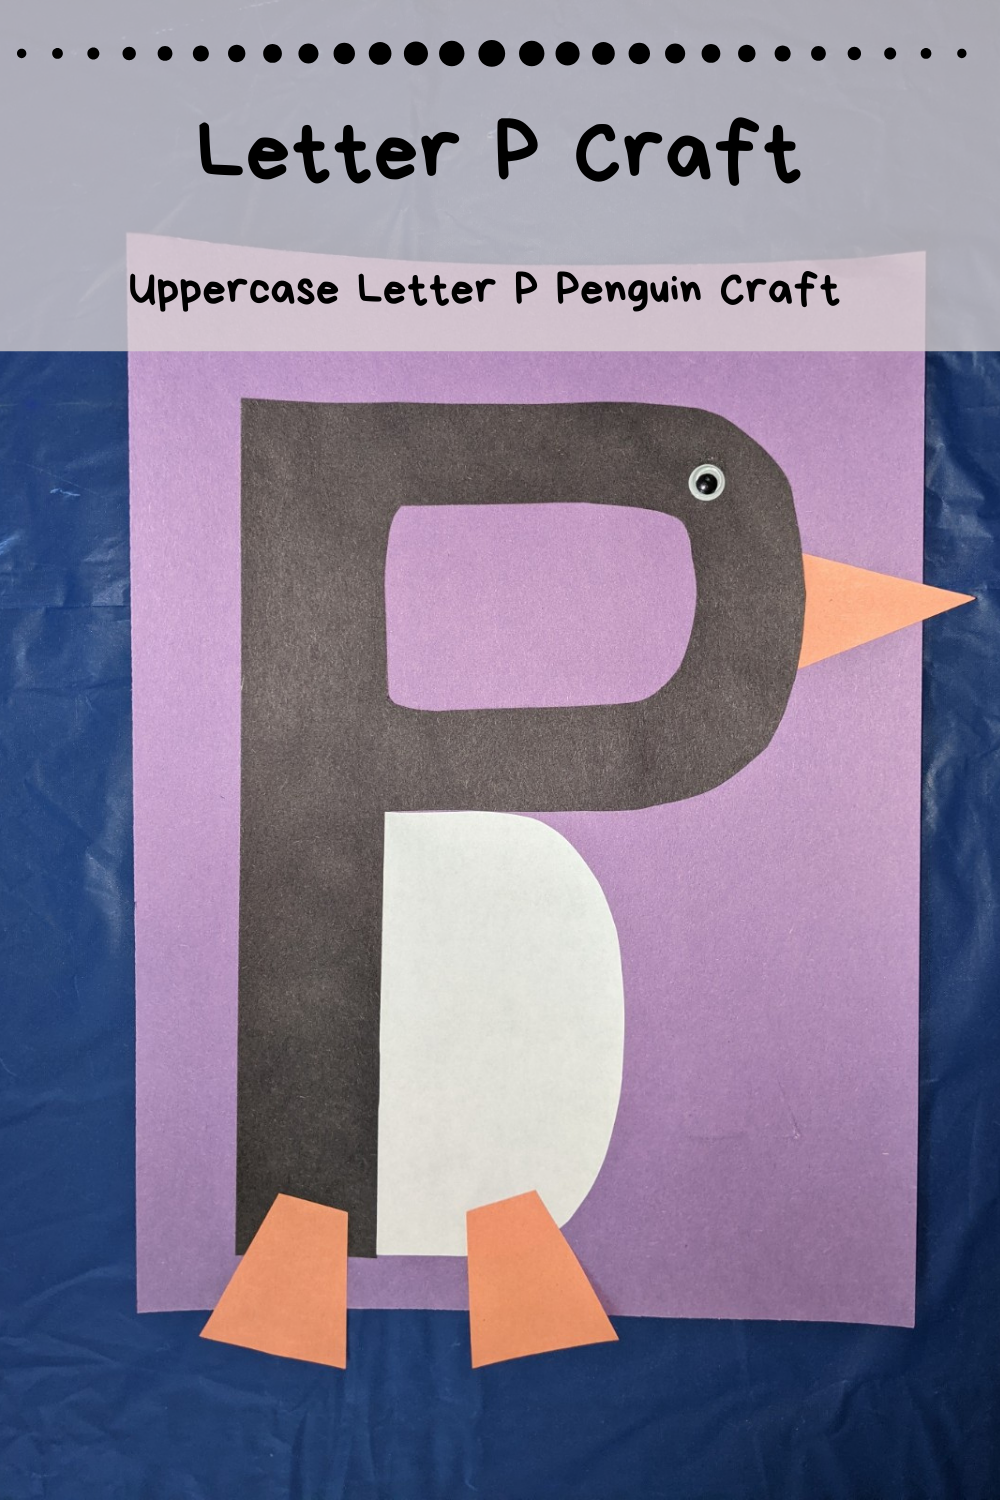 letter p homework for preschoolers